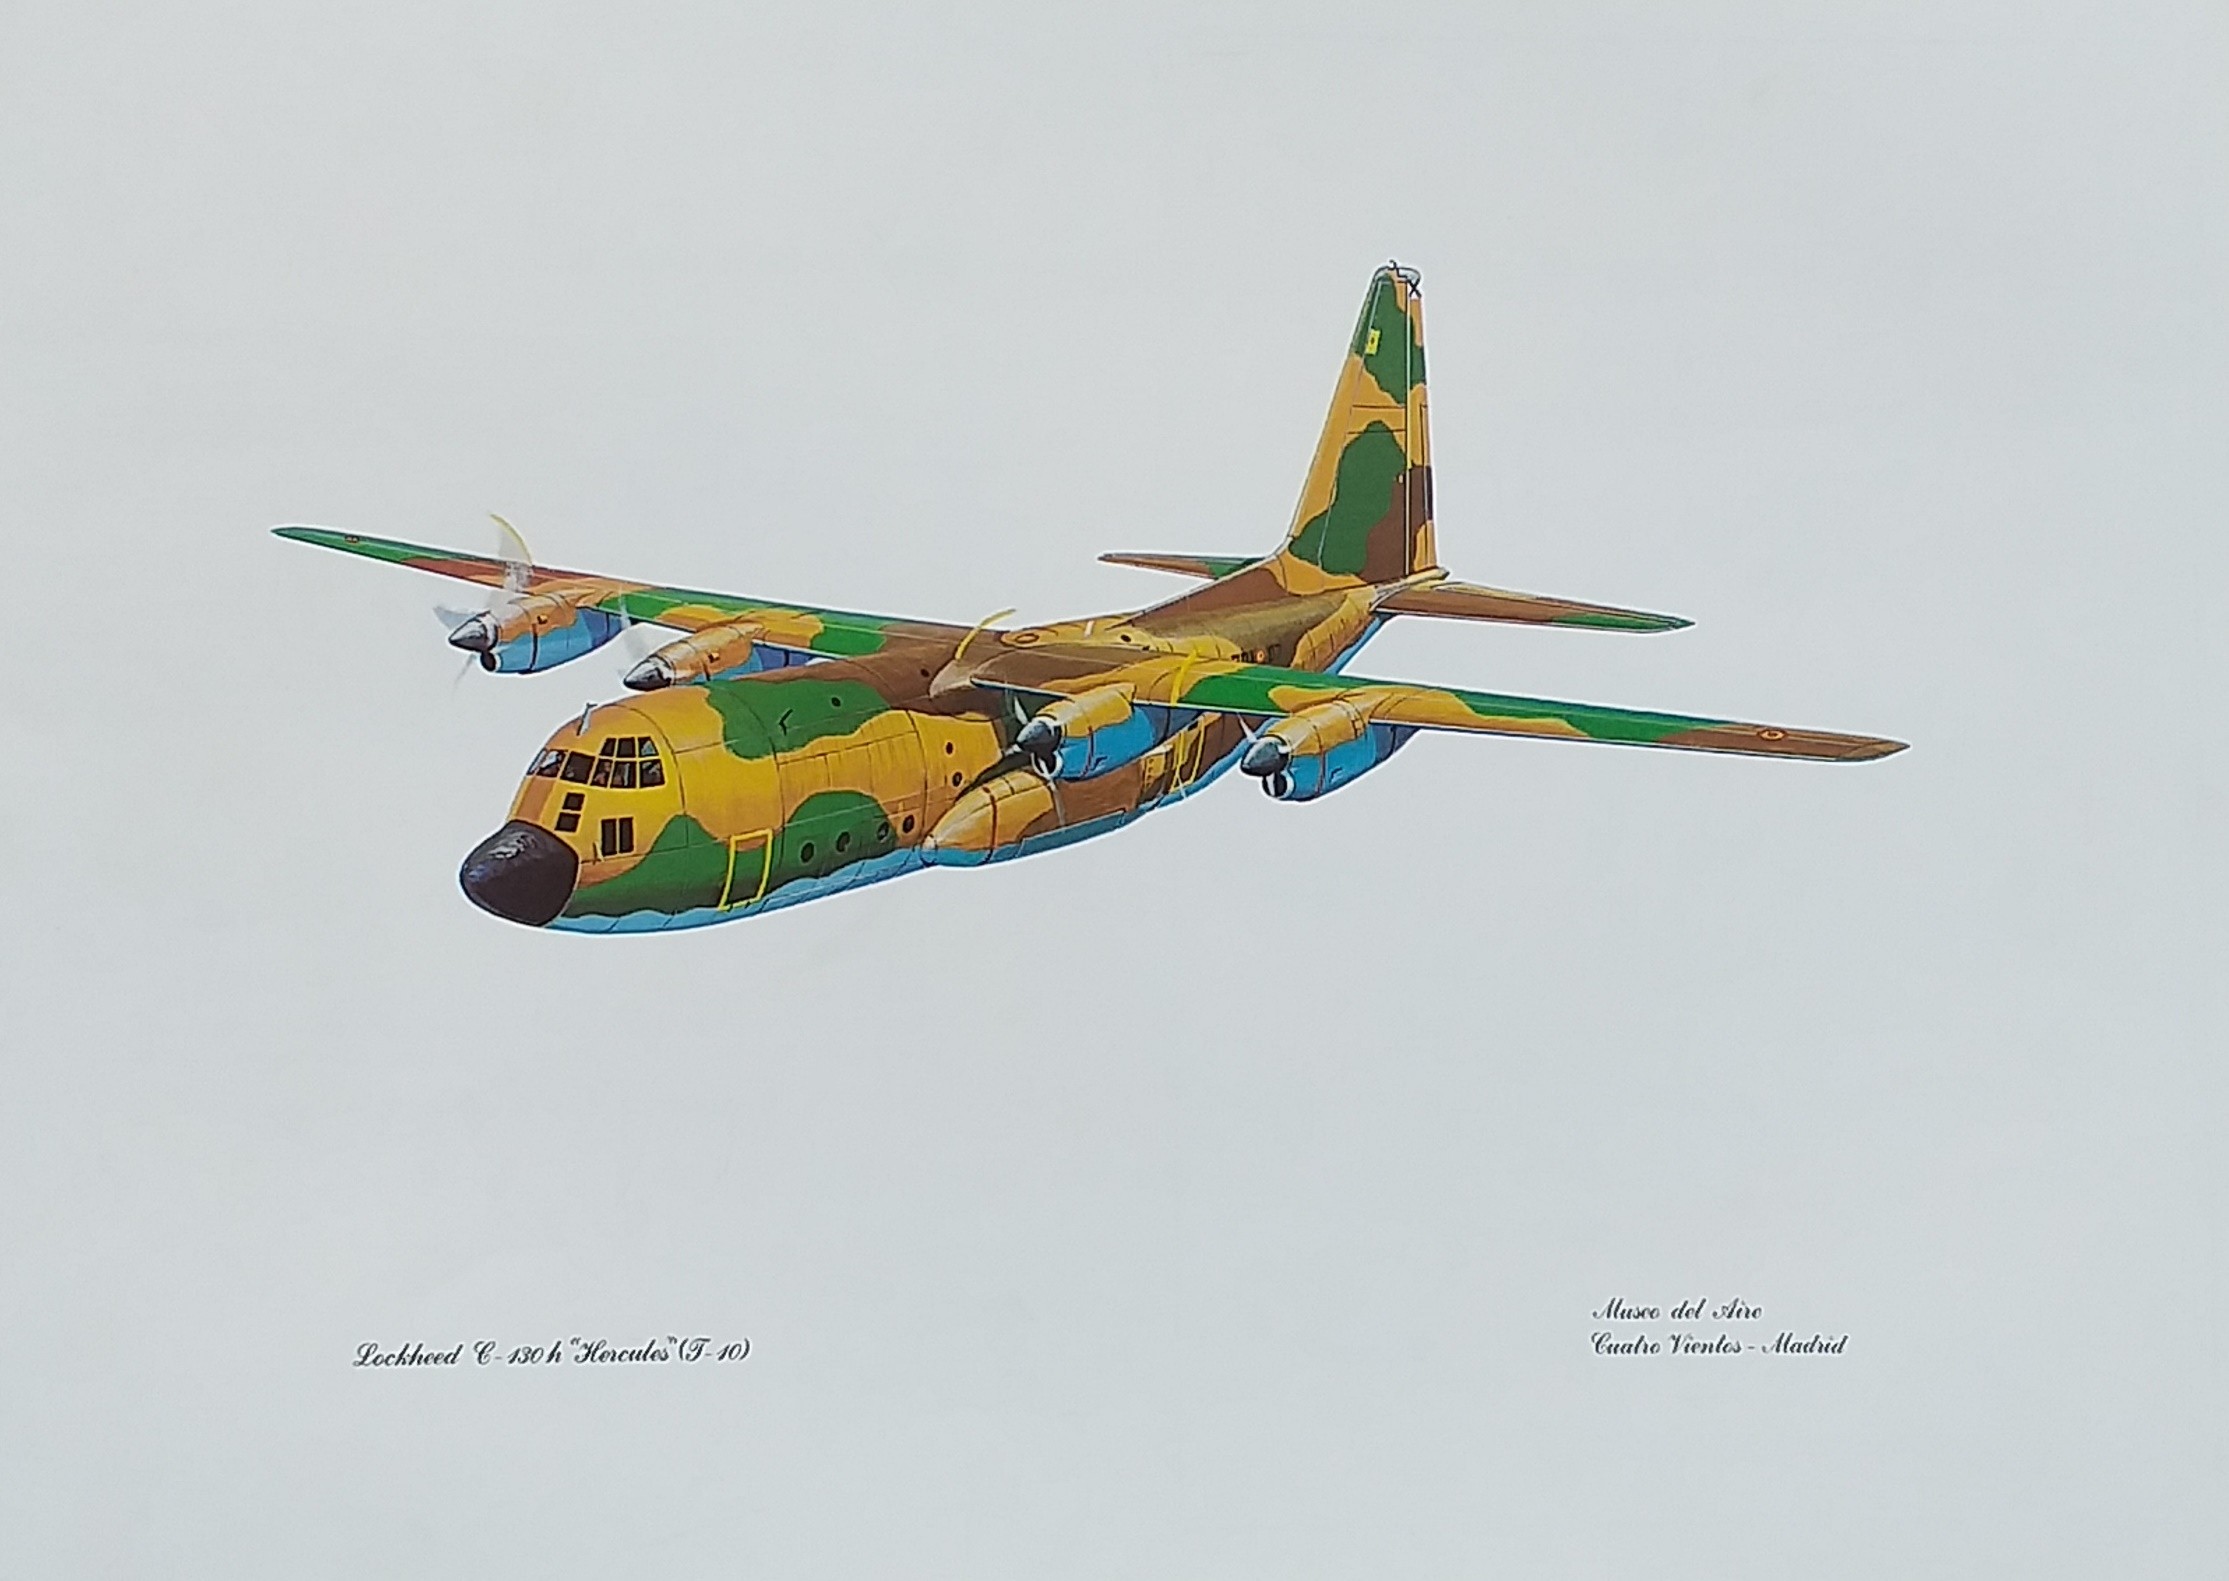 LOCKEED C-130 h "HERCULES" (T-10) AVIONES ACTUALES BUSQUEDA Y TRANSPORTE